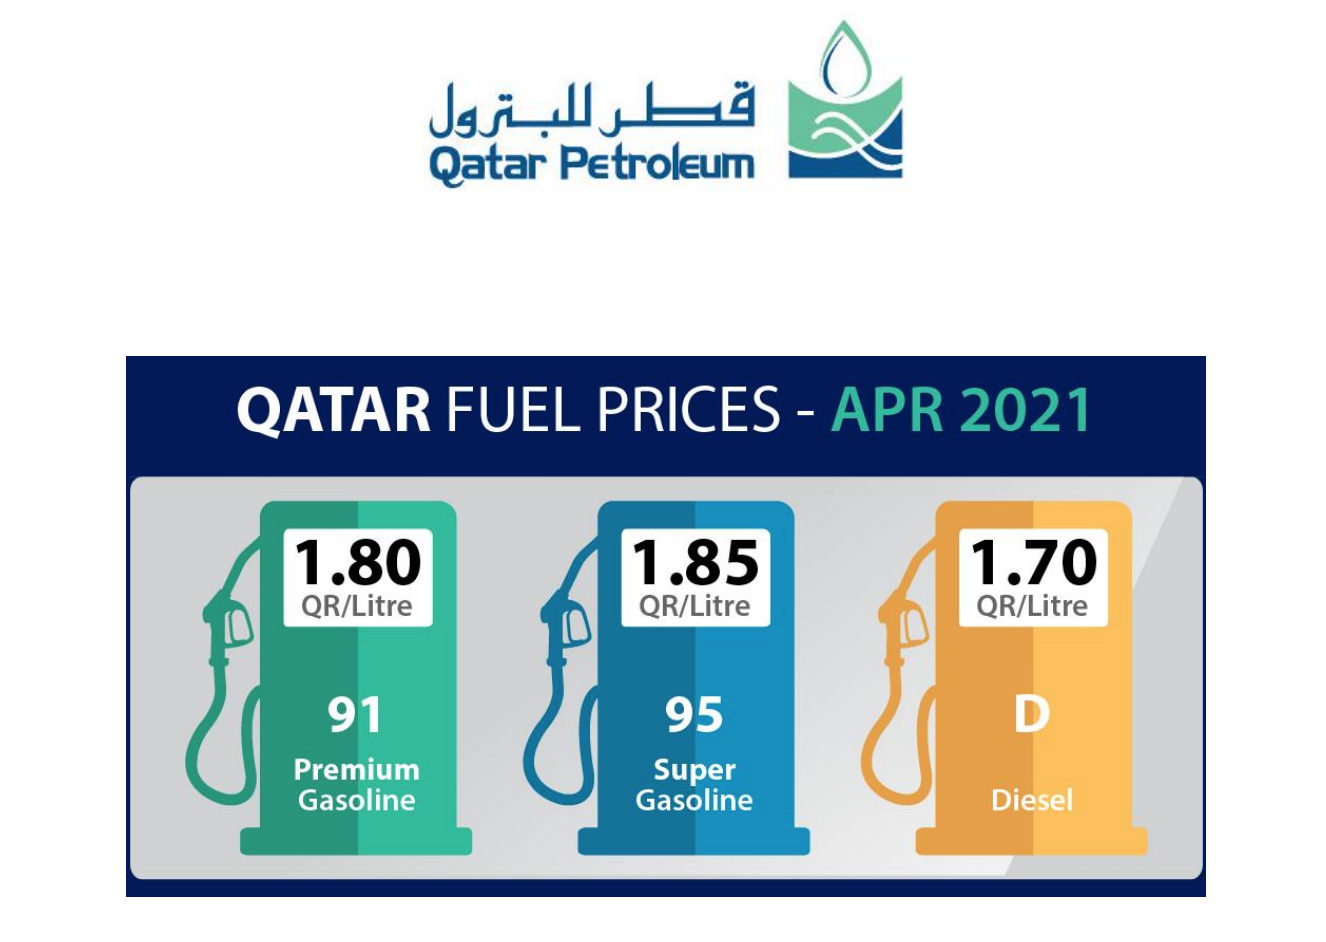 أسعار الوقود في قطر ترتفع في أبريل ٢٠٢١